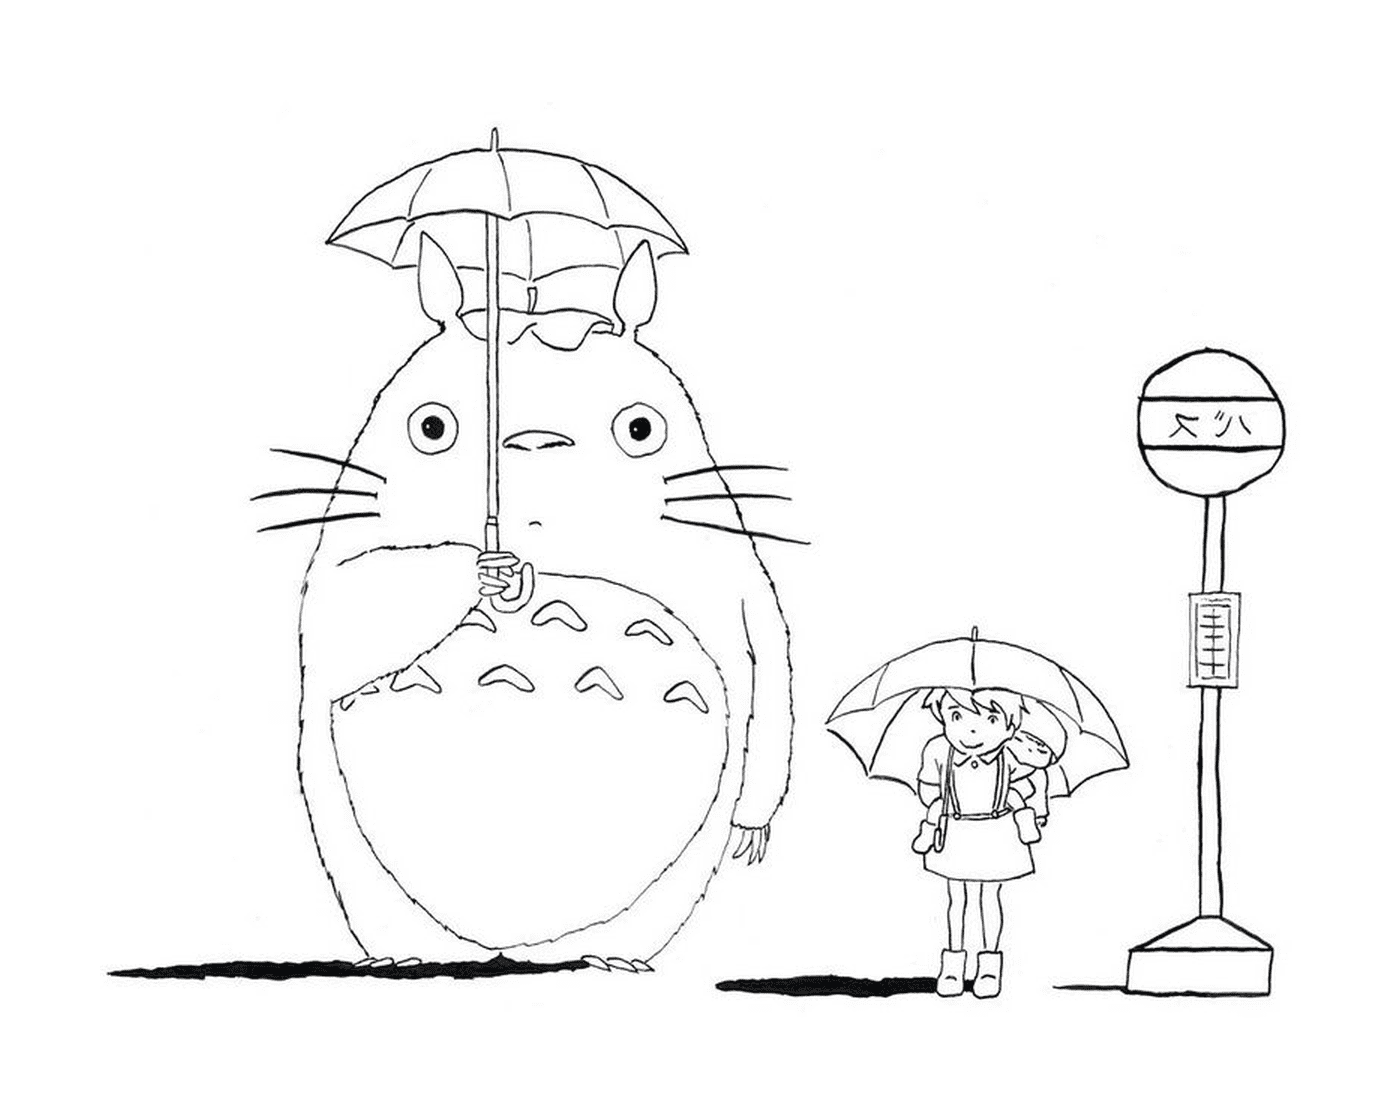  Тоторо и девушка ждут автобус под дождем 